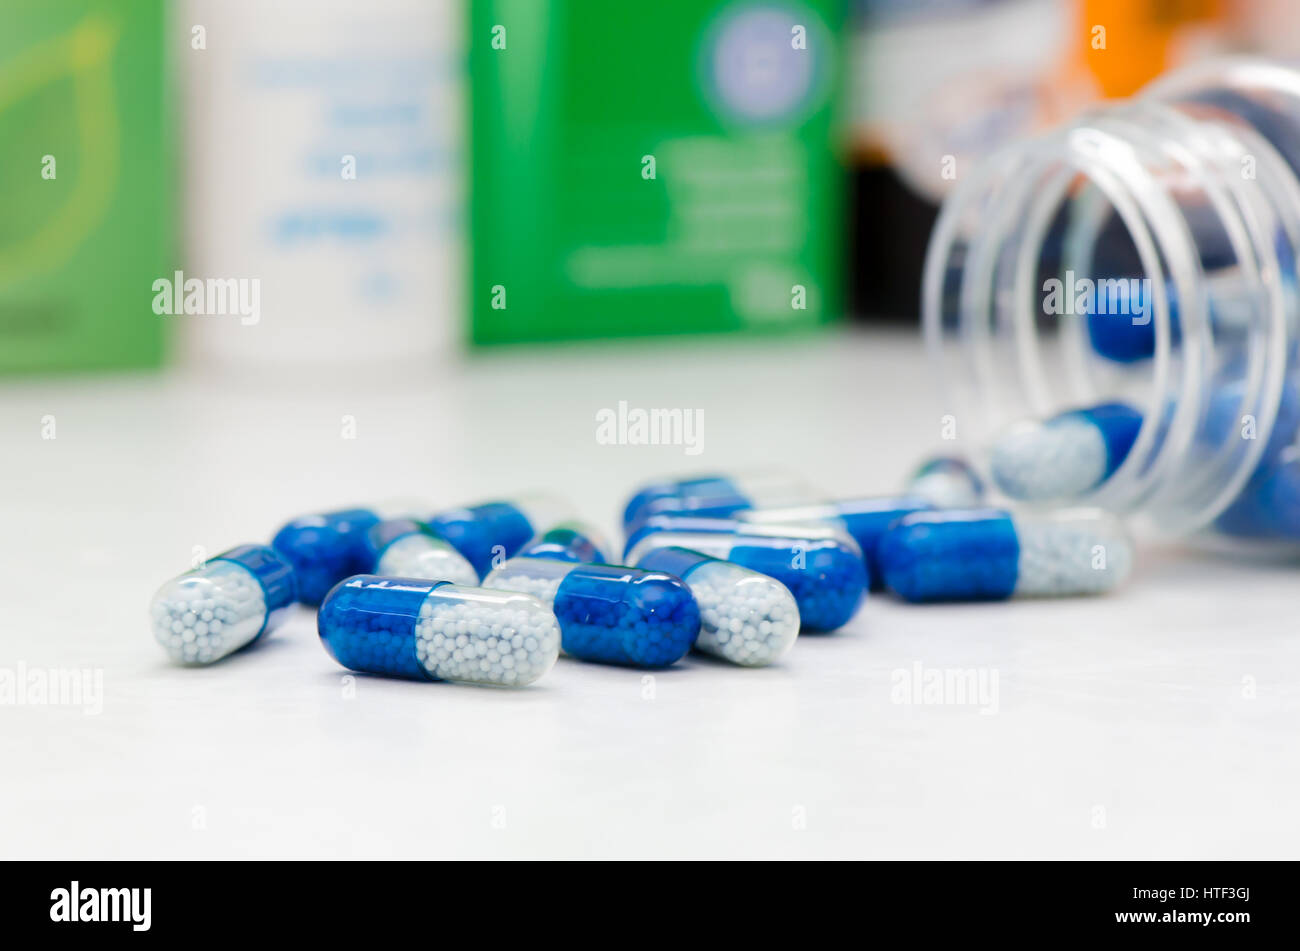 Molte pillole capsule close up. pillola capsula medicina health care farmacia macro concetto di farmaco Foto Stock